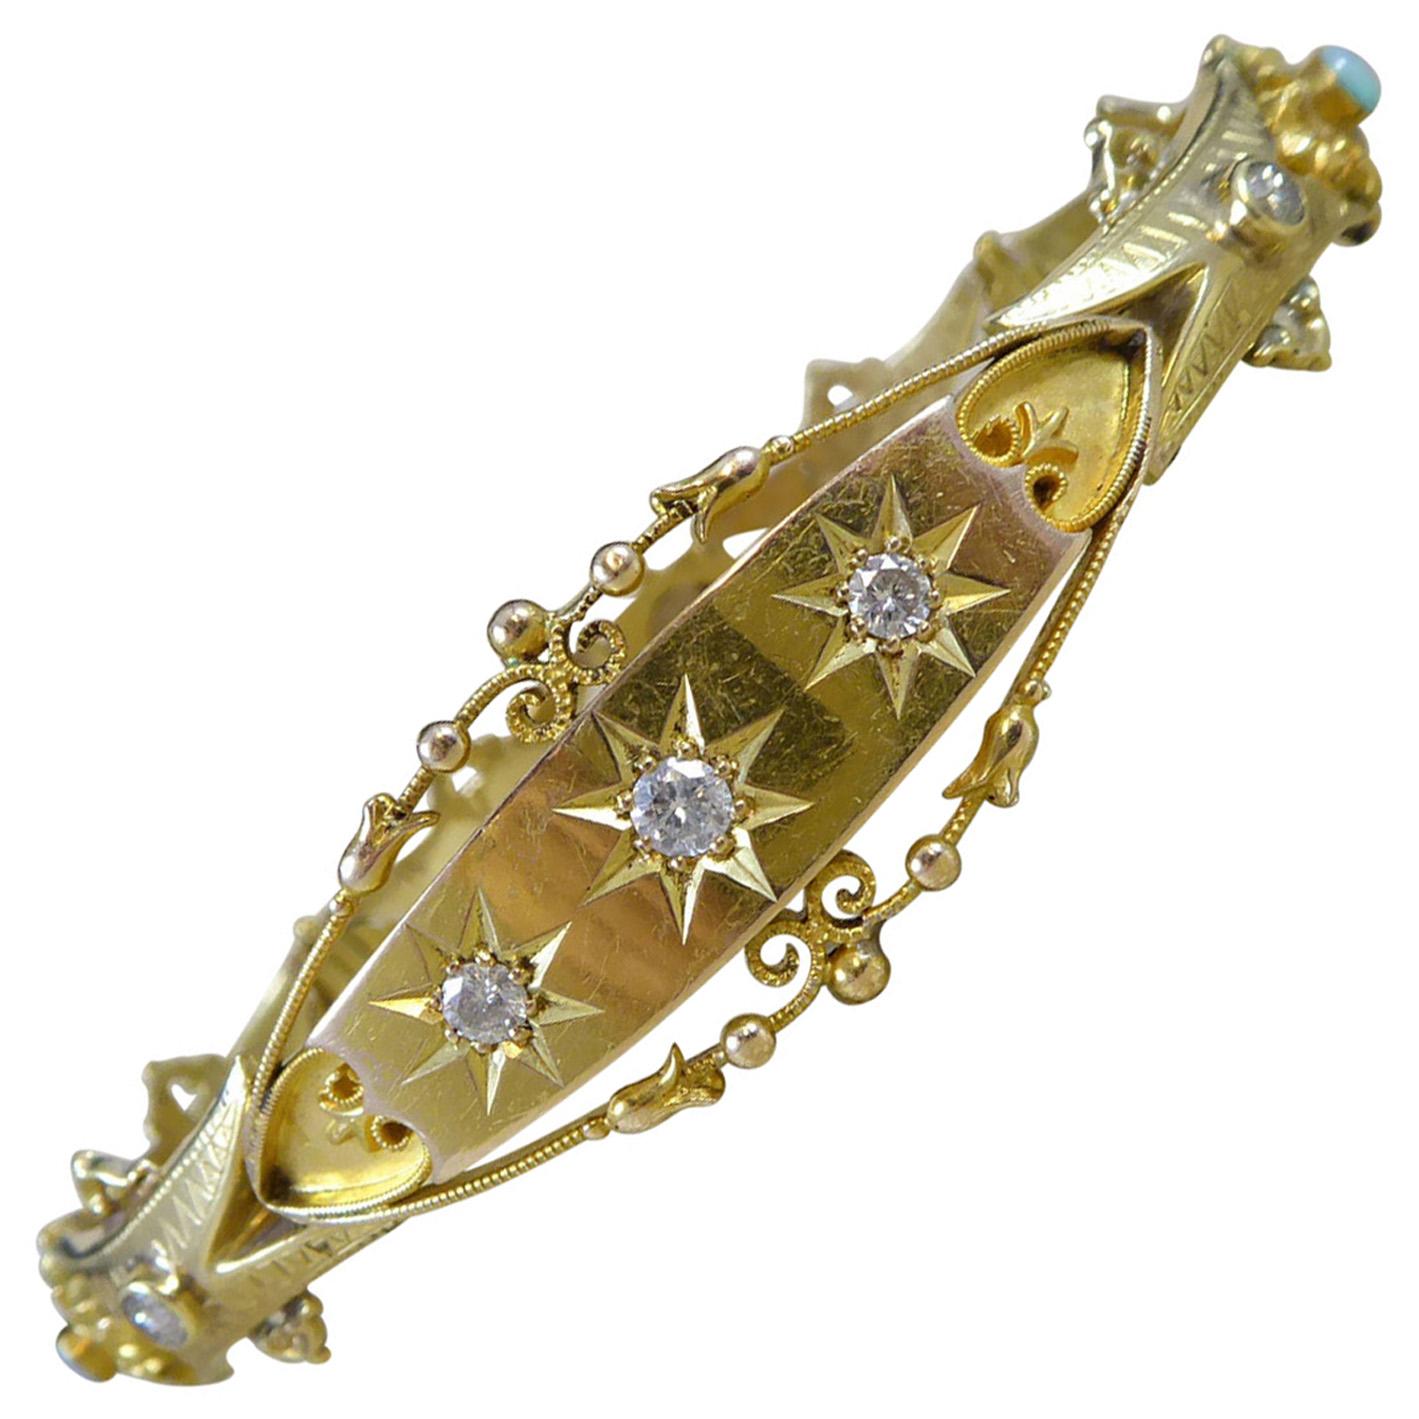 Antique Opal Bracelet - 24 For Sale on 1stDibs